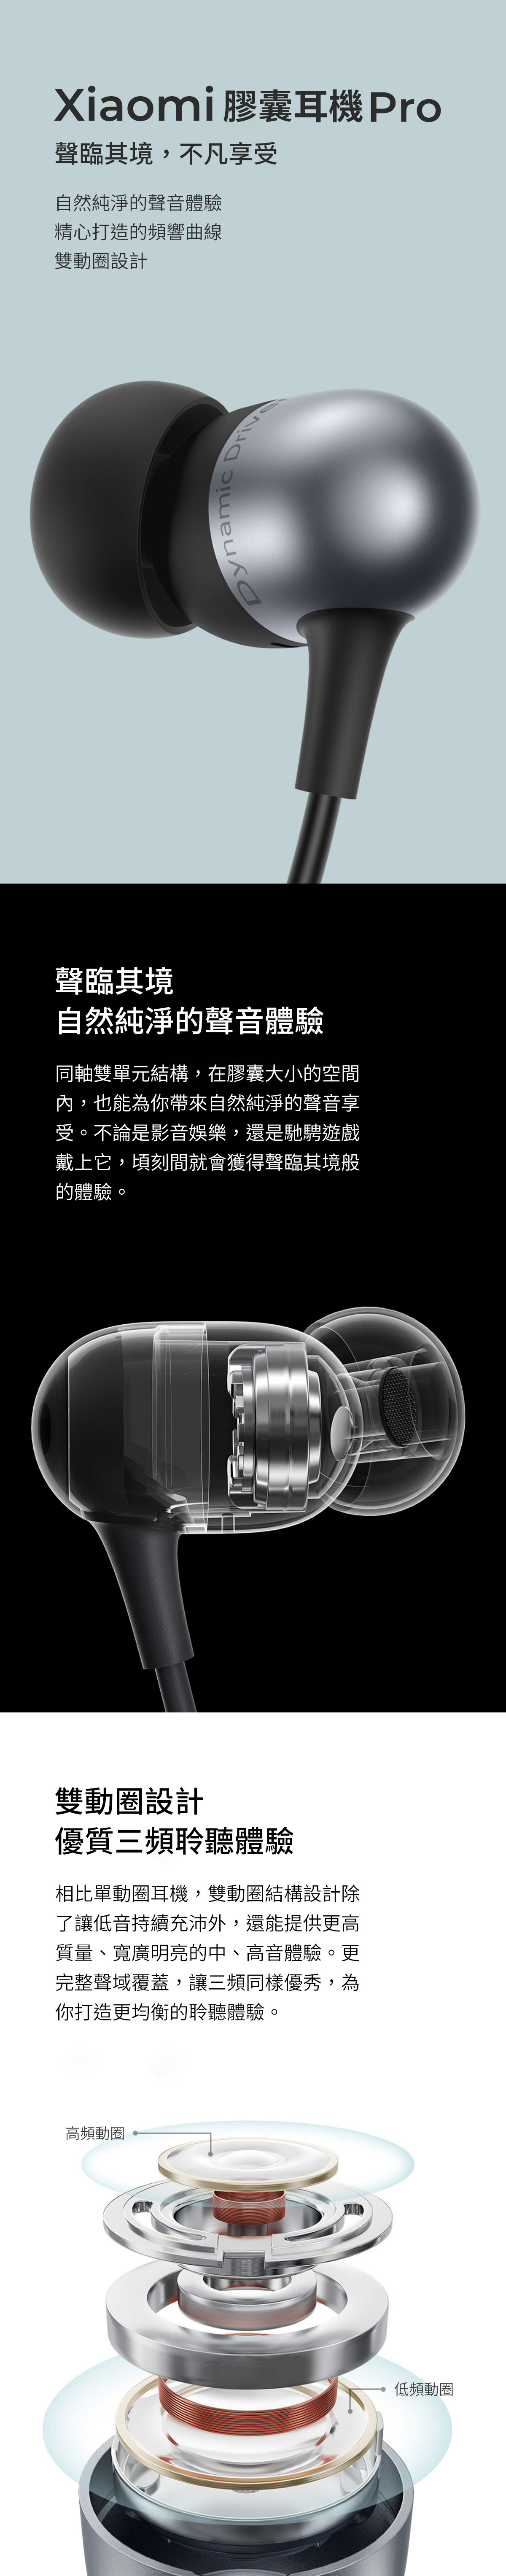 Xiaomi 膠囊耳機 Pro聲臨其境,不凡享受自然純淨的聲音體驗精心打造的頻響曲線雙動圈設計聲臨其境自然純淨的聲音體驗同軸雙單元結構,在膠囊大小的空間內,也能為你帶來自然純淨的聲音享受。不論是影音娛樂,還是馳騁遊戲戴上它,頃刻間就會獲得聲臨其境般的體驗。雙動圈設計優質三頻聆聽體驗相比單動圈耳機,雙動圈結構設計除了讓低音持續充沛外,還能提供更高質量、寬廣明亮的中、高音體驗。更完整聲域覆蓋,讓三頻同樣優秀,為你打造更均衡的聆聽體驗。高頻動圈低頻動圈DynamicDriv